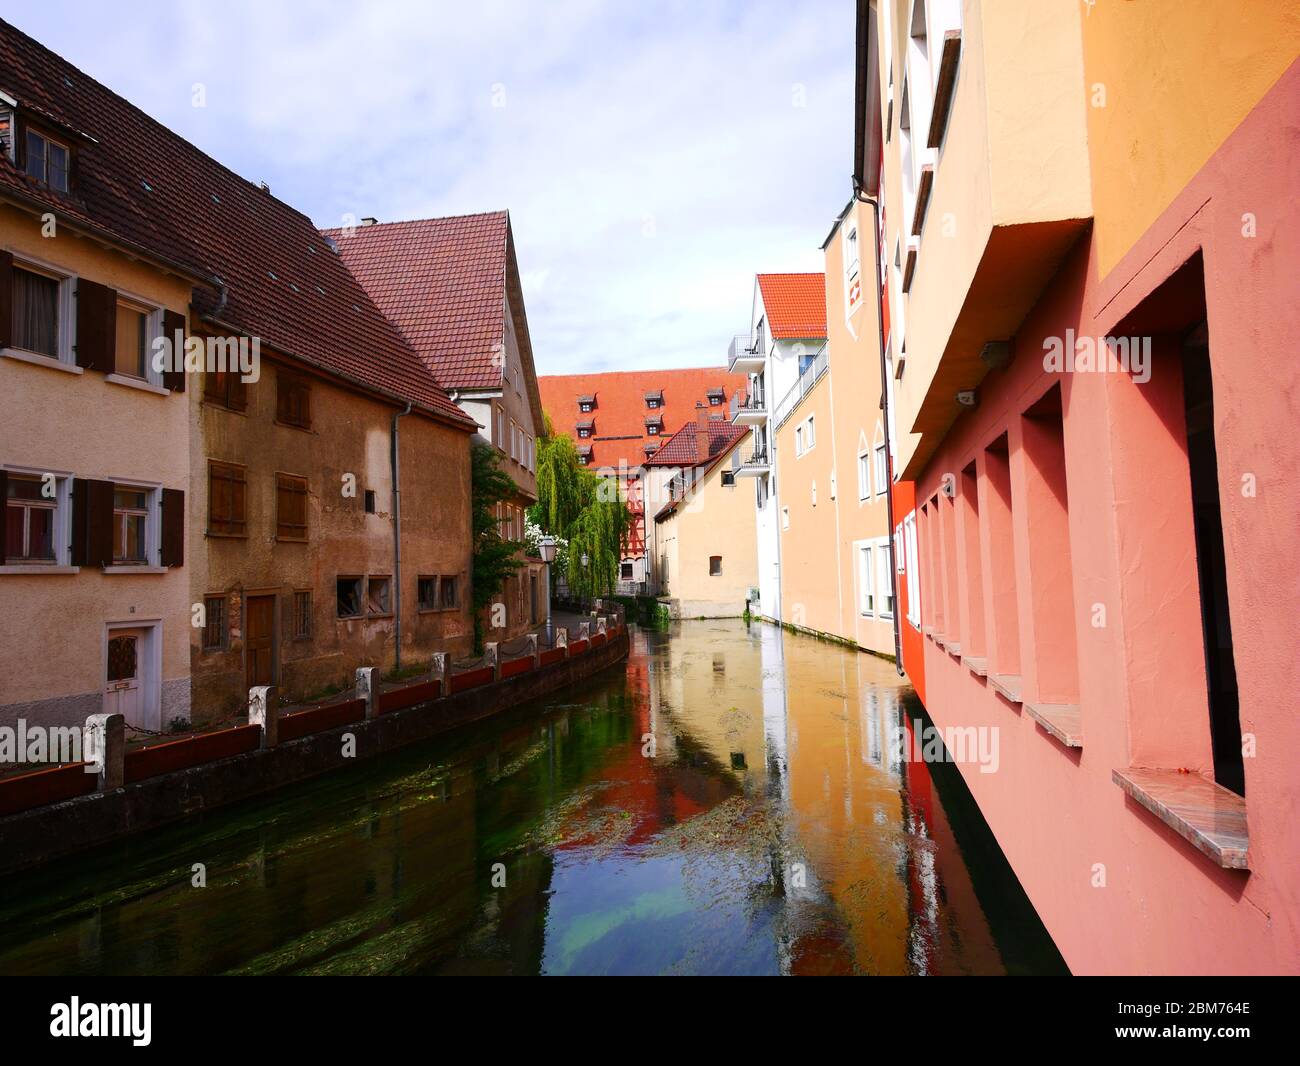 Ehingen, Allemagne: La ville se reflète dans la rivière Schmiech Banque D'Images